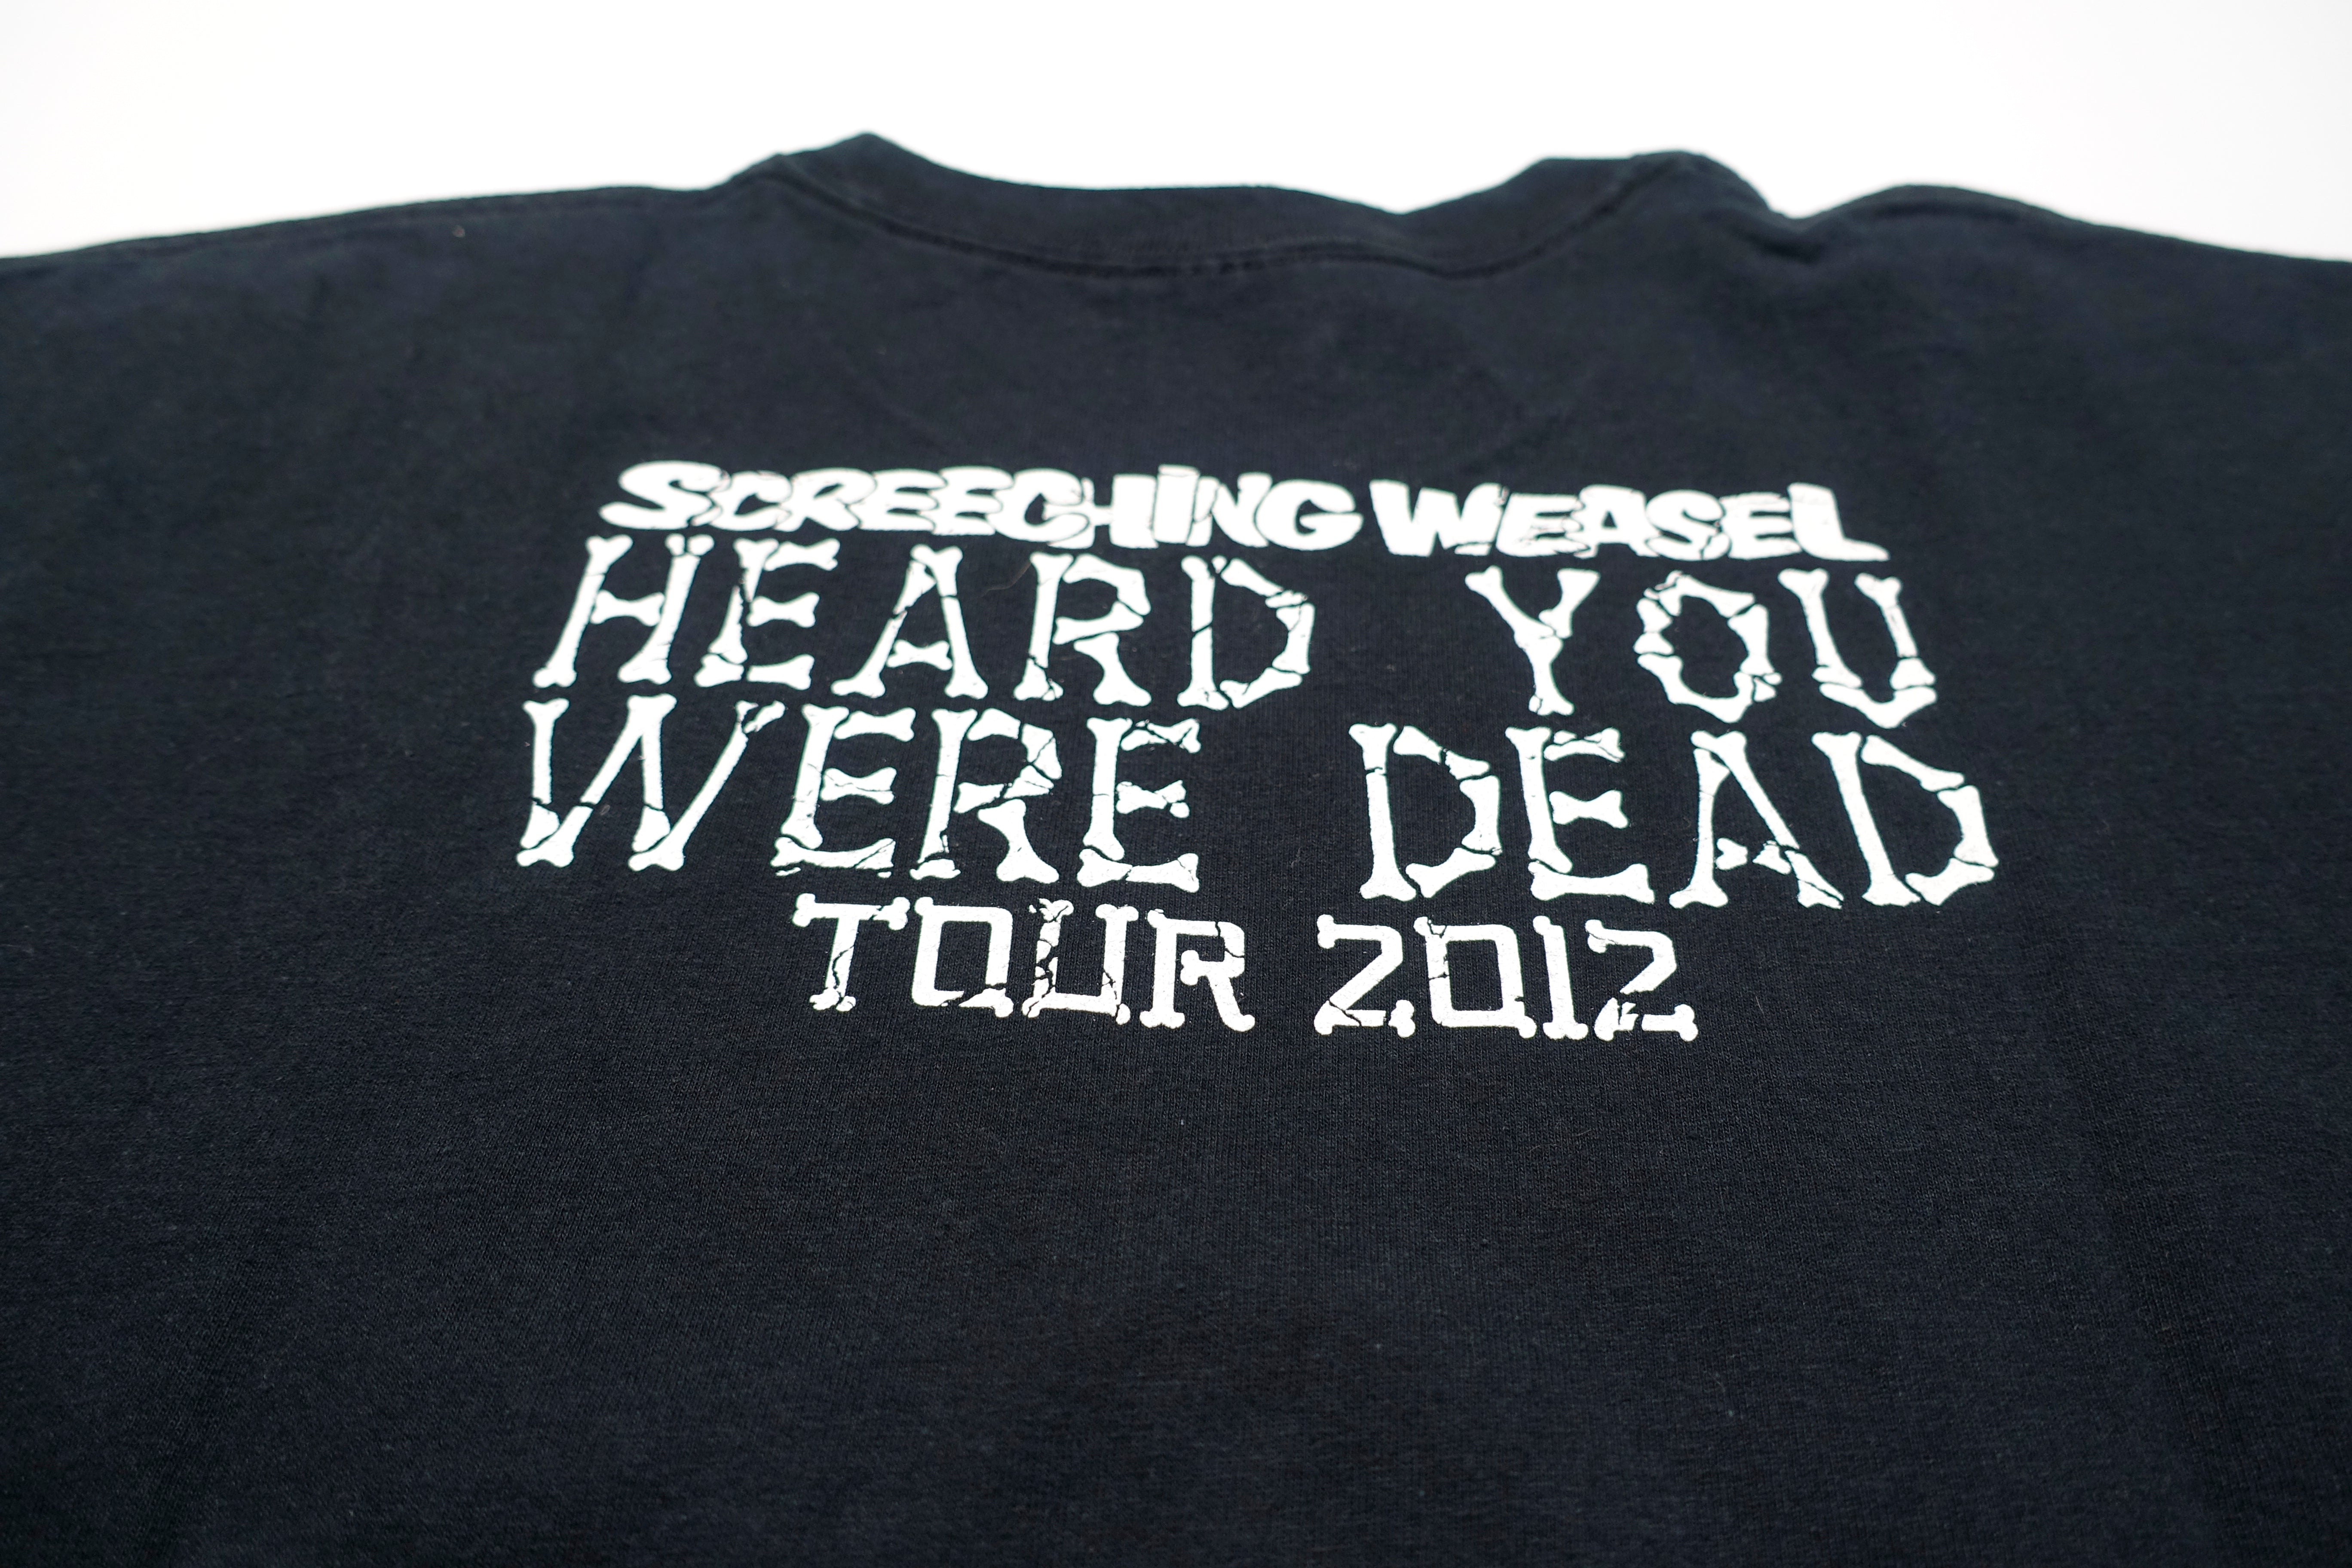 Screeching Weasel ‎– Heard You Were Dead 2012 Tour Shirt Size Large